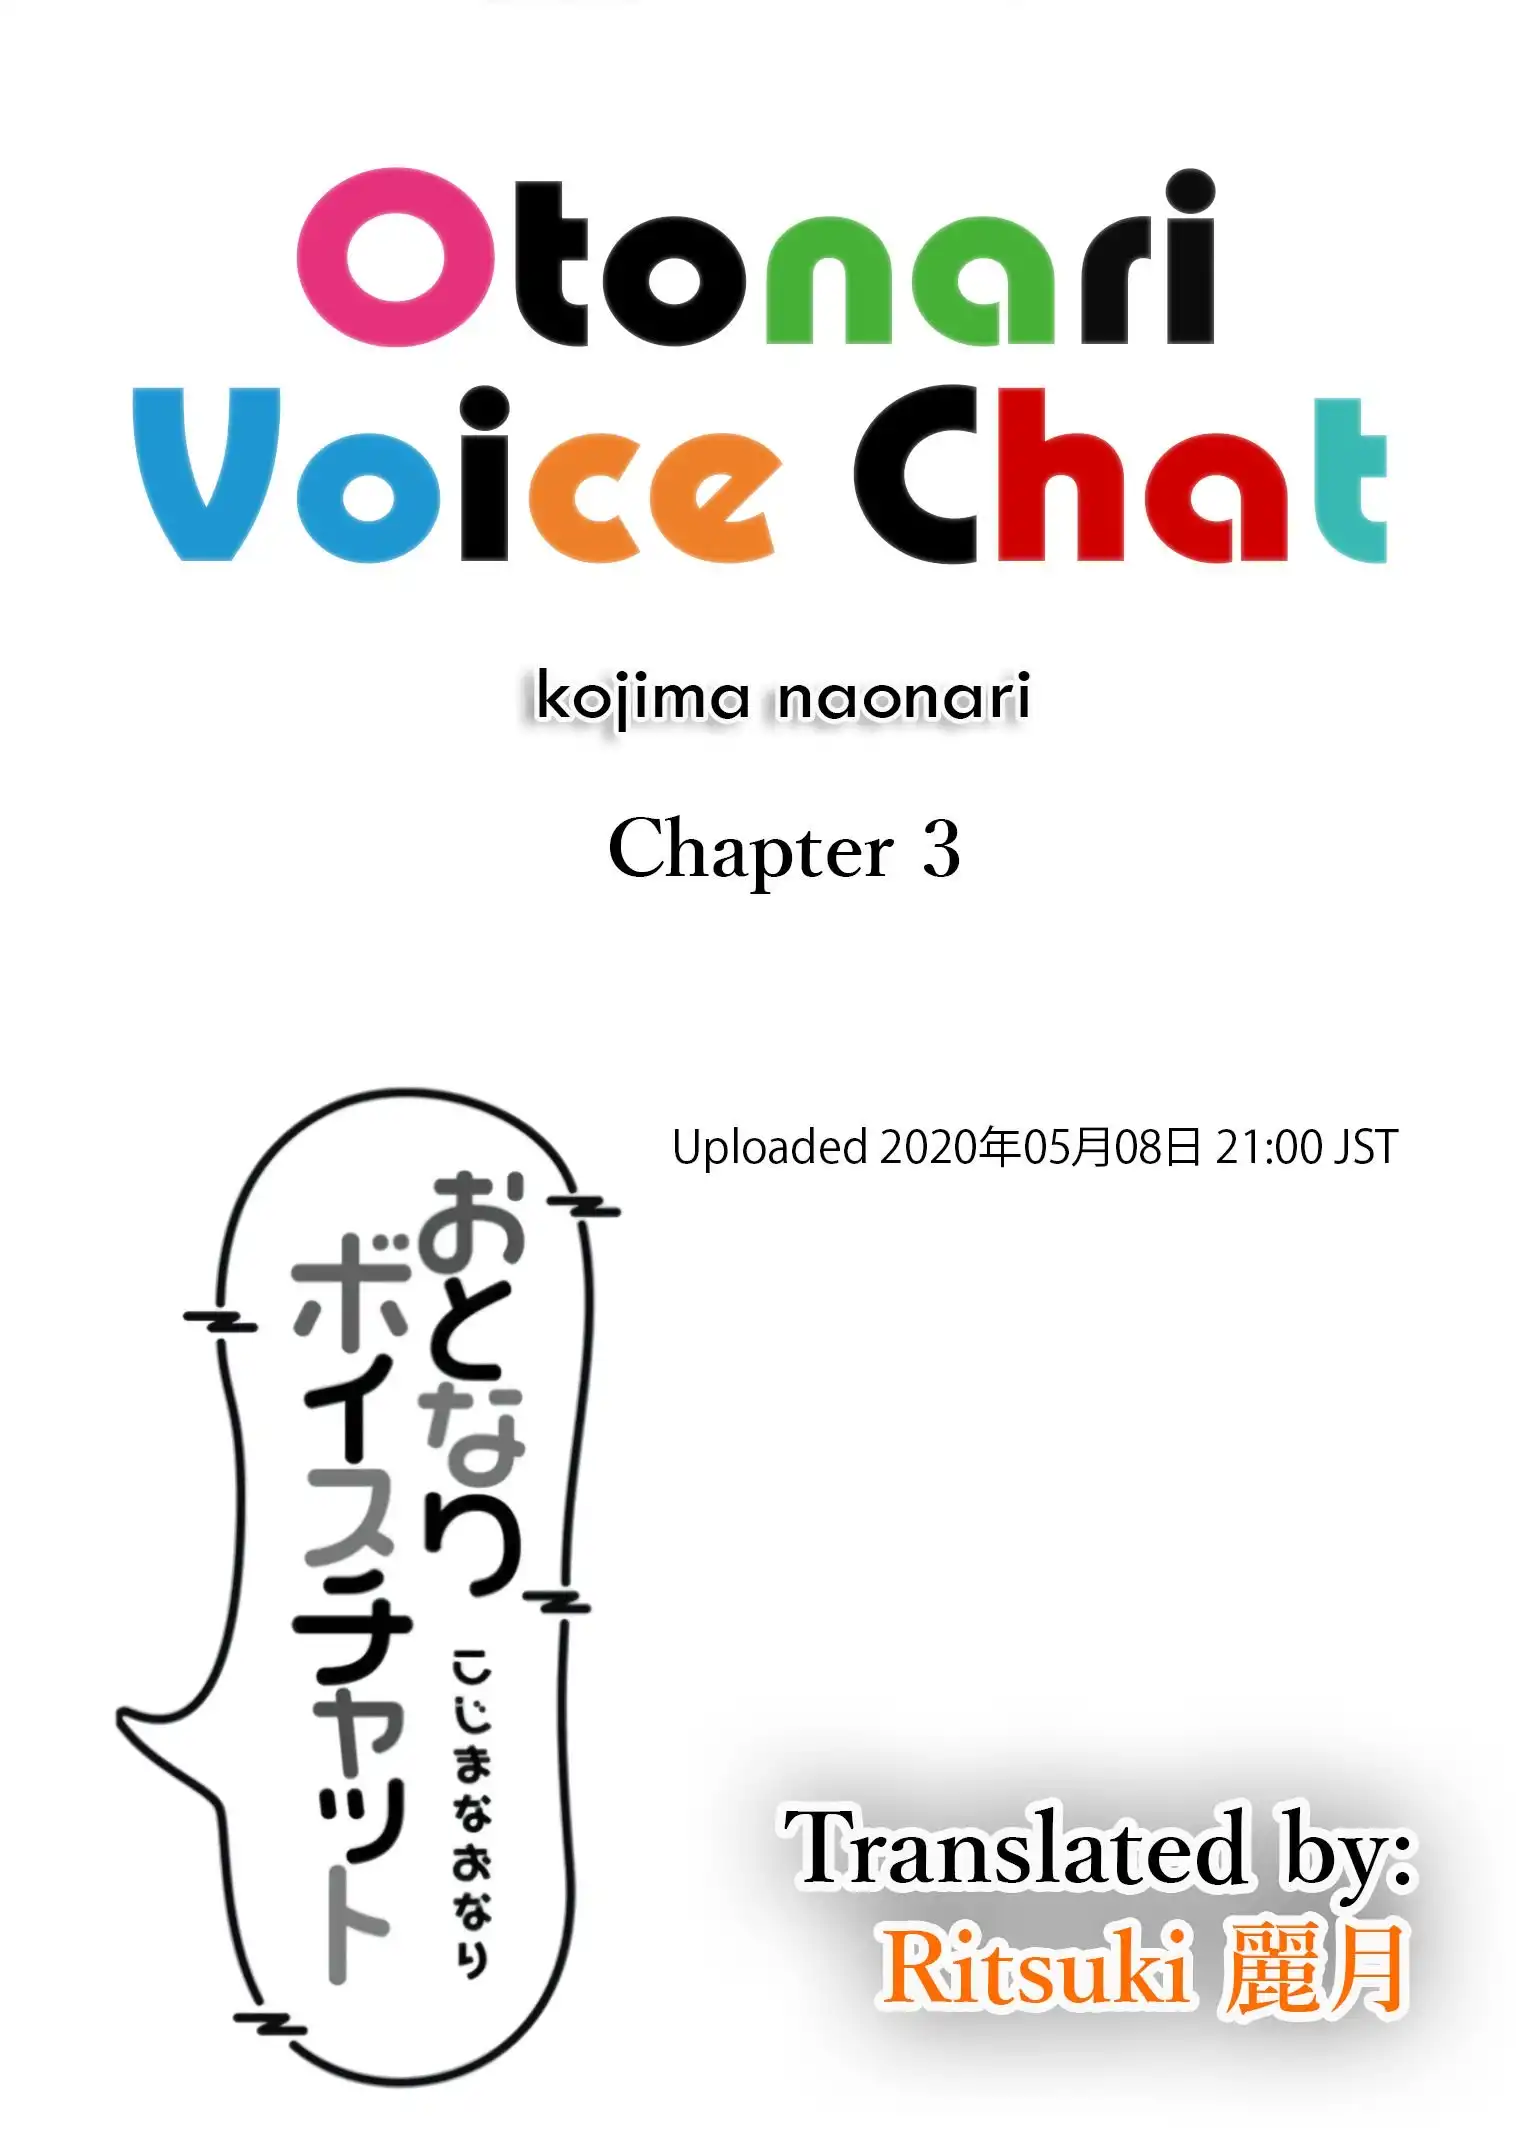 Otonari Voice Chat Chapter 3